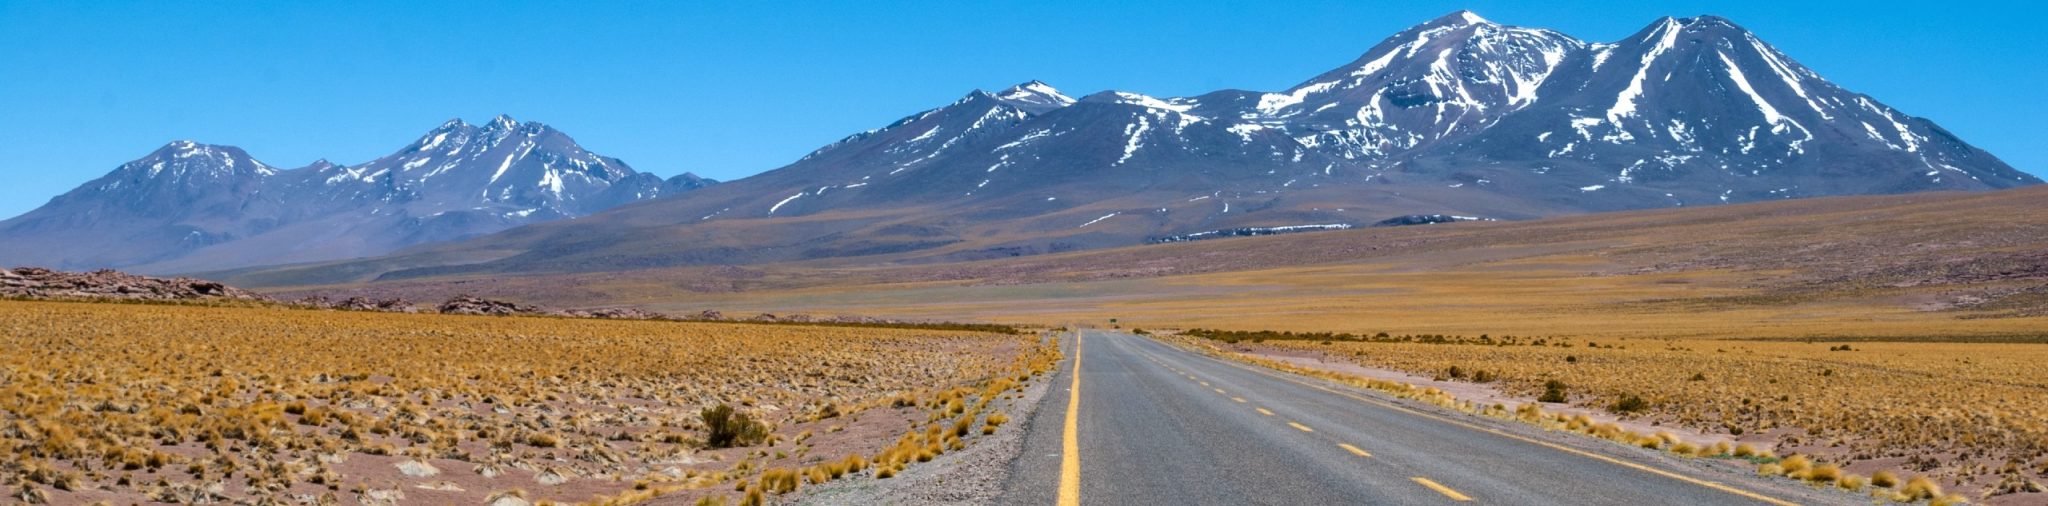 8-Day Atacama Desert Self-Drive Tour